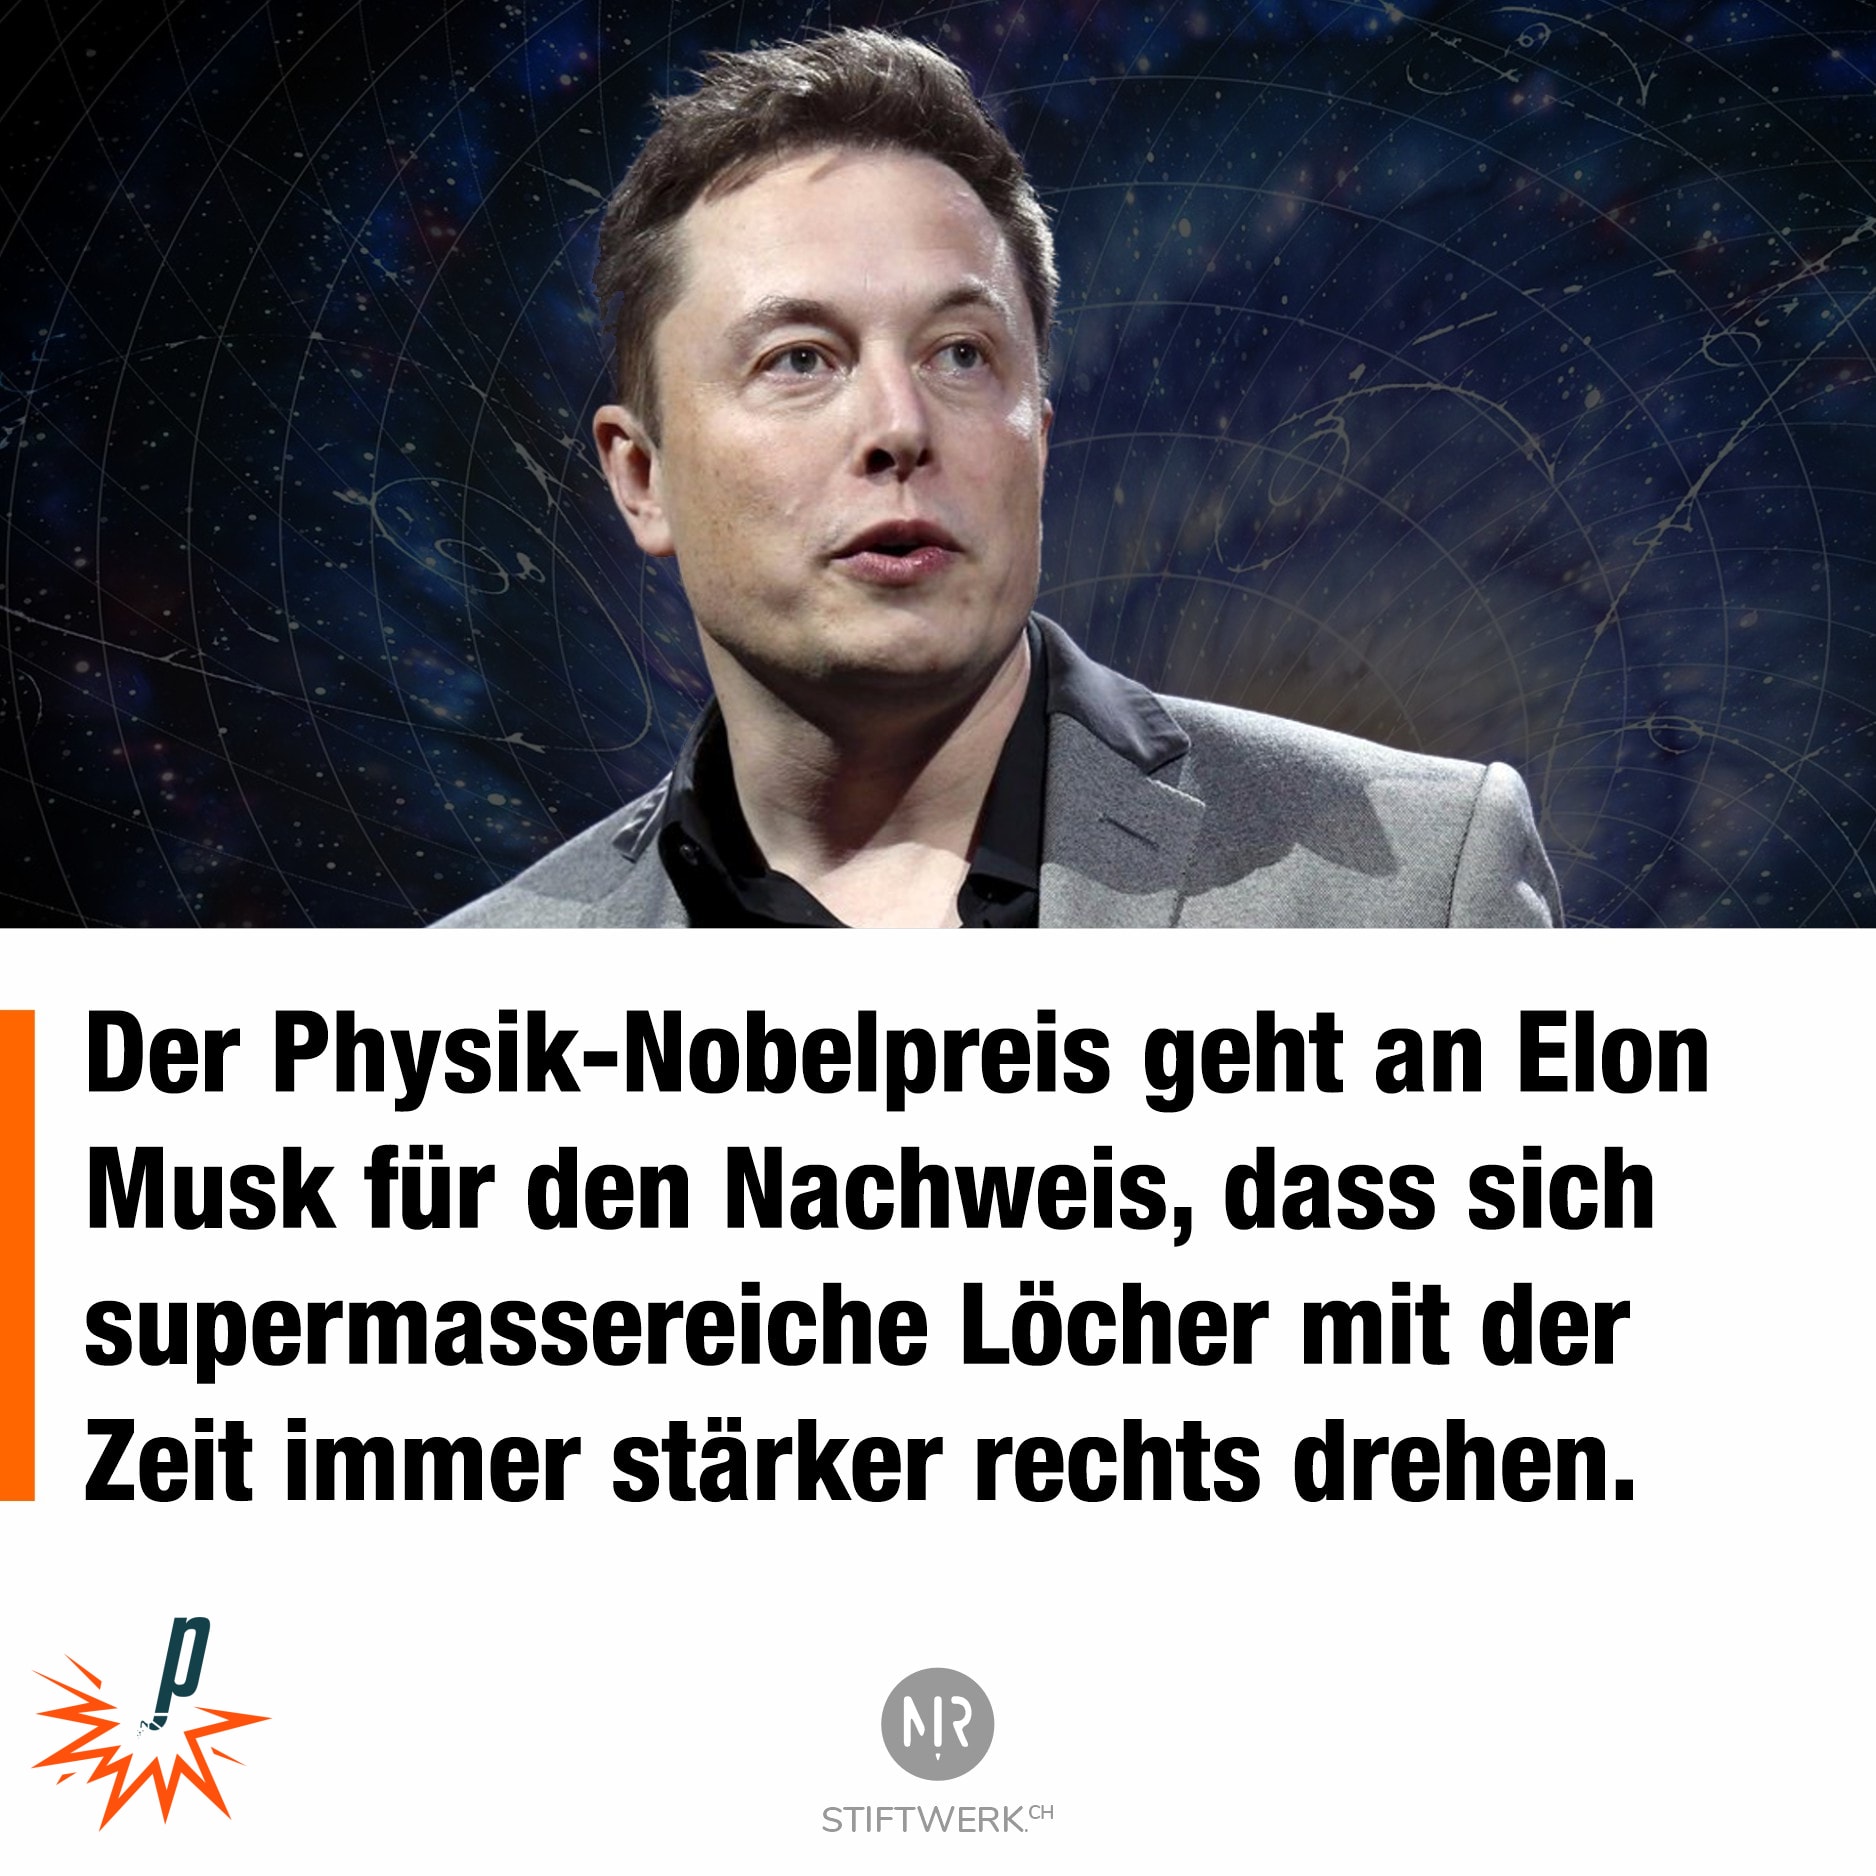 Der Physik-Nobelpreis geht an Elon Musk für den Nachweis, dass sich supermassereiche Löcher mit der Zeit immer stärker rechts drehen.